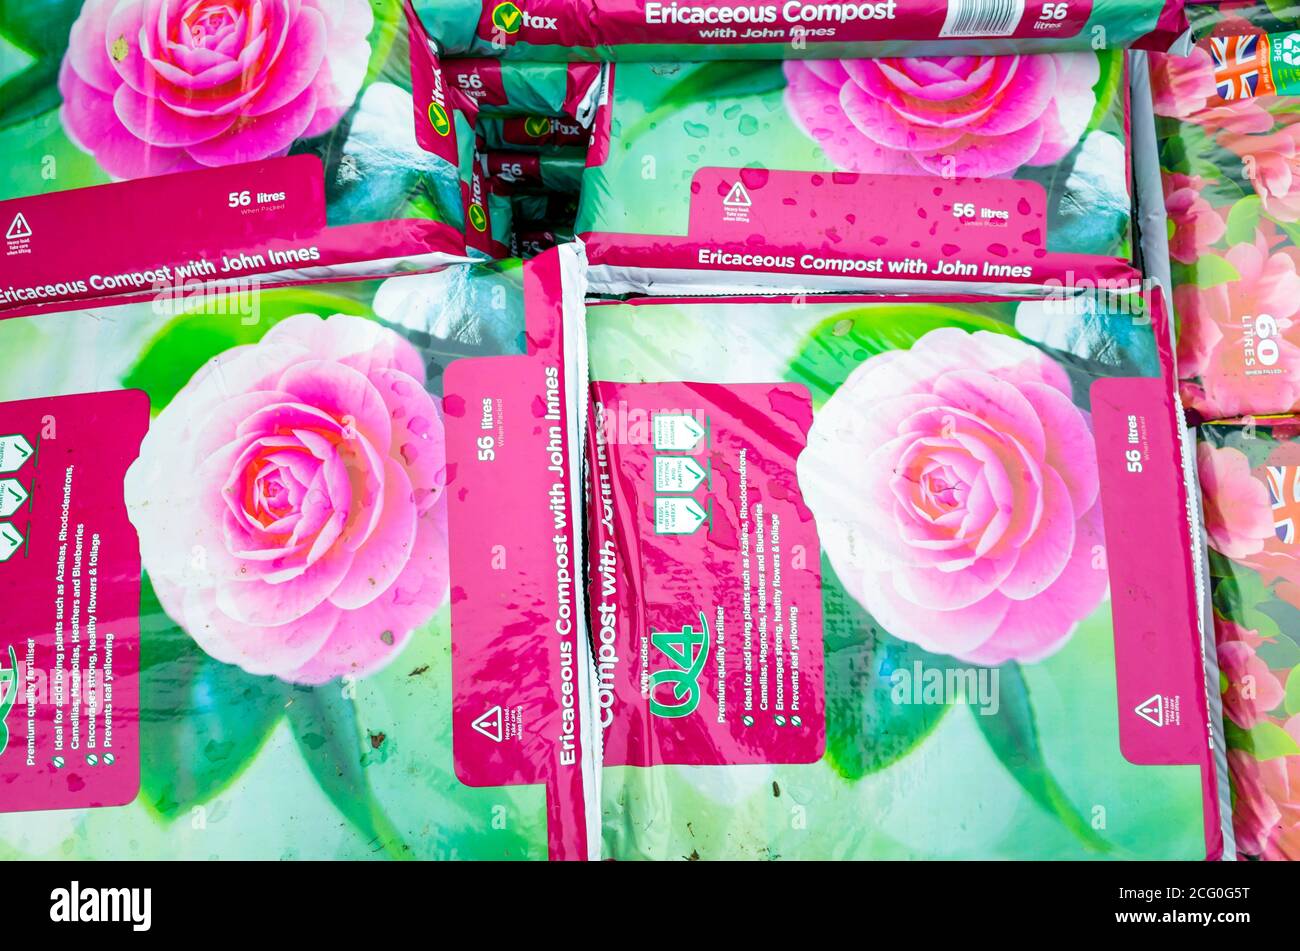 Una pila di sacchetti rosa di composto ericaceo con John Innes in un centro giardino Foto Stock